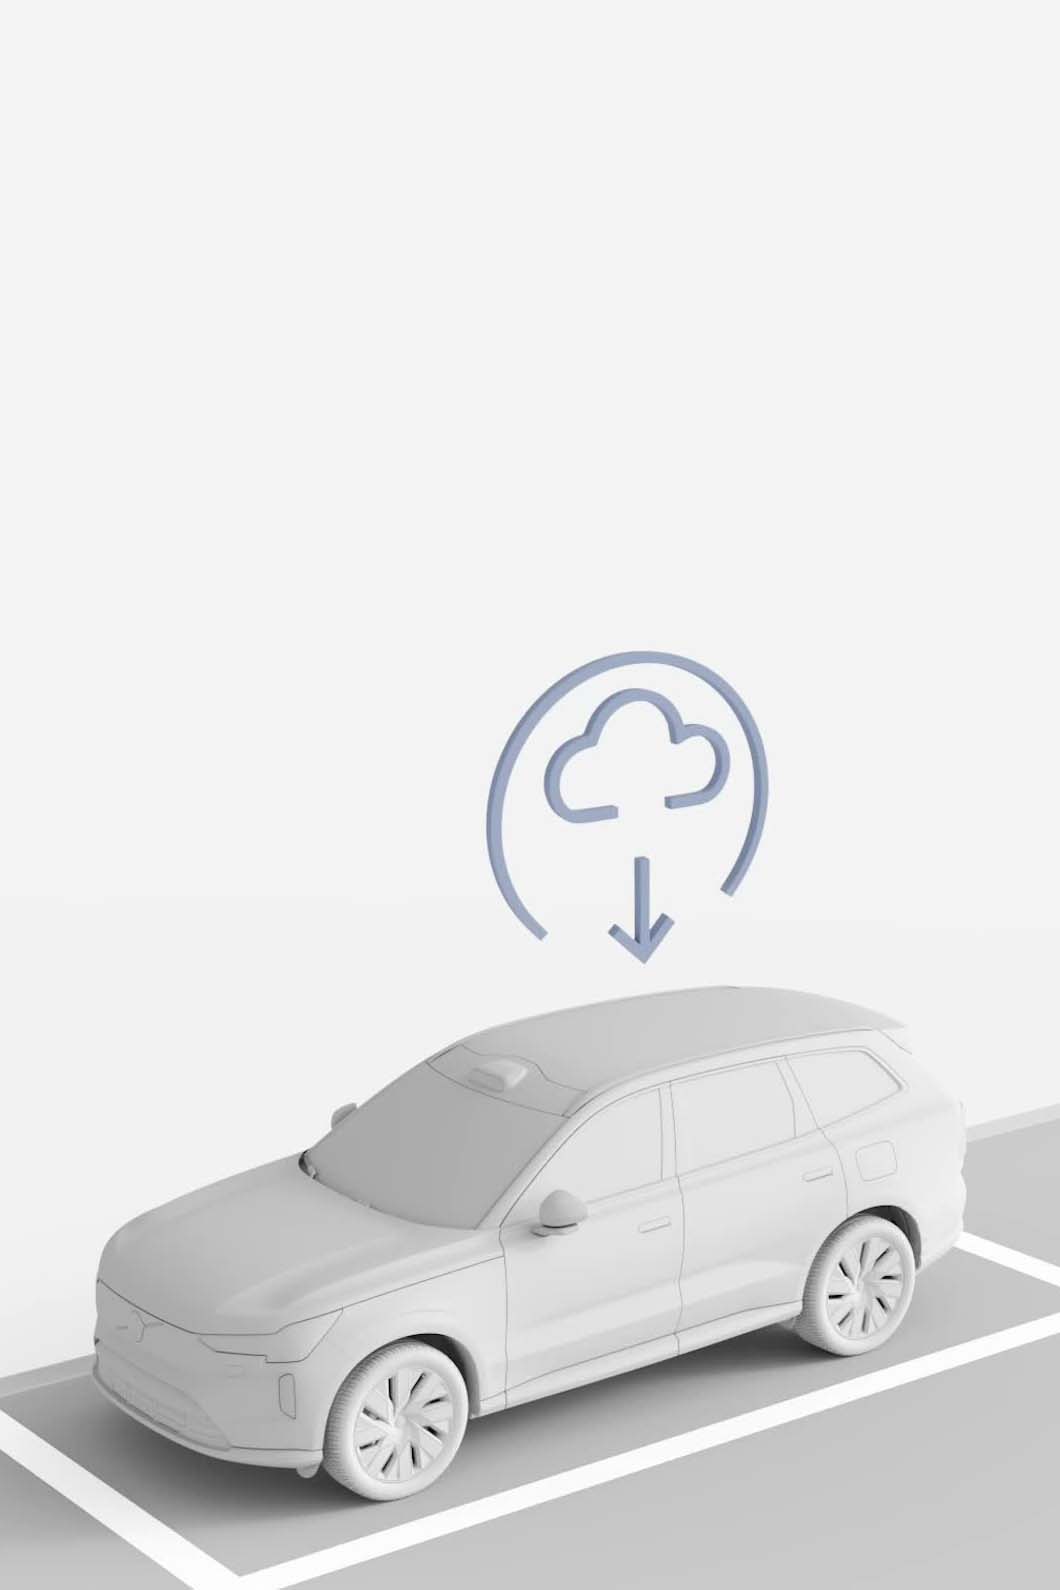 Ilustracja przedstawiająca samochód Volvo pobierający aktualizację oprogramowania z chmury